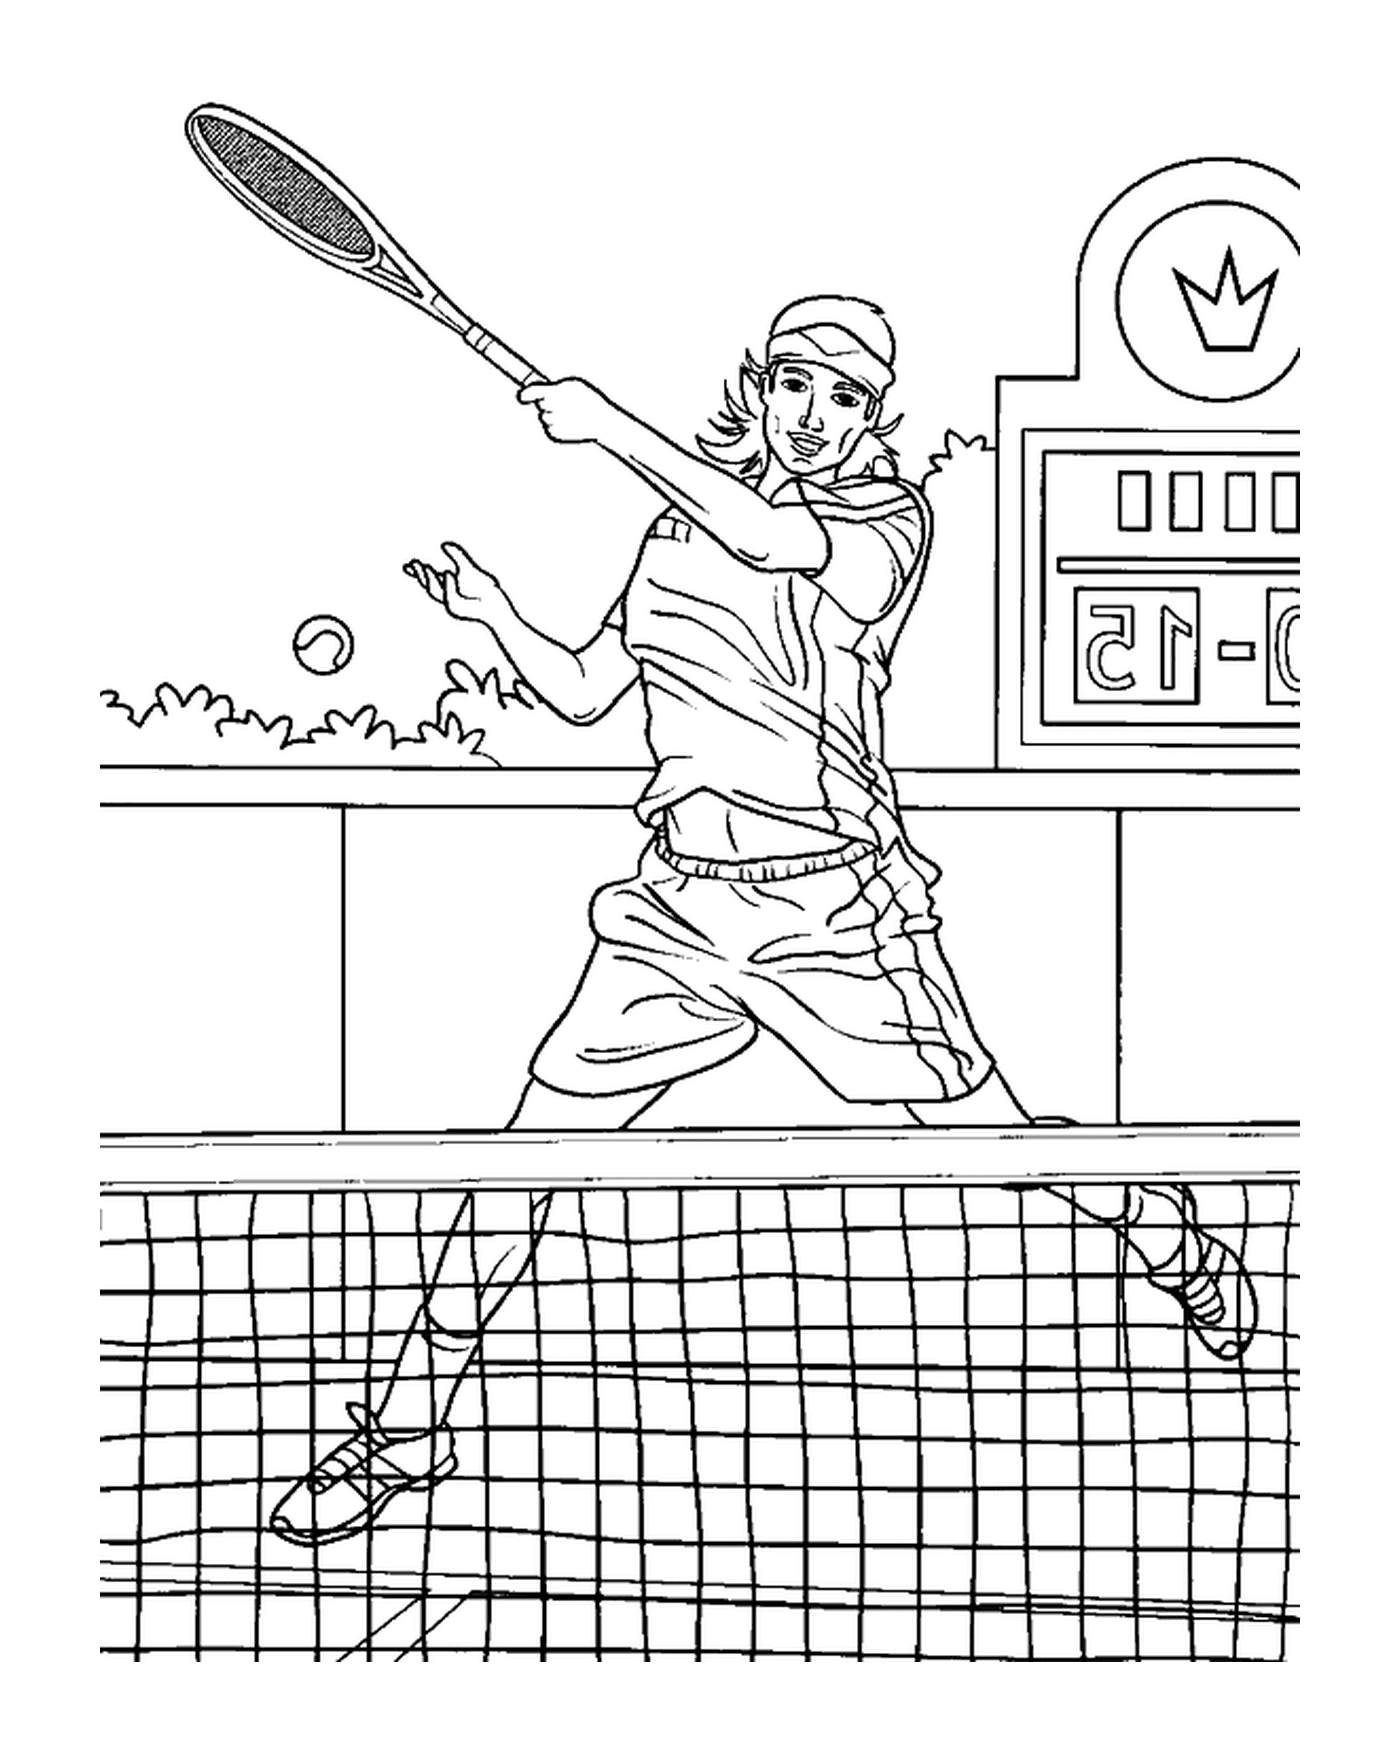  Un gioco di tennis animato 